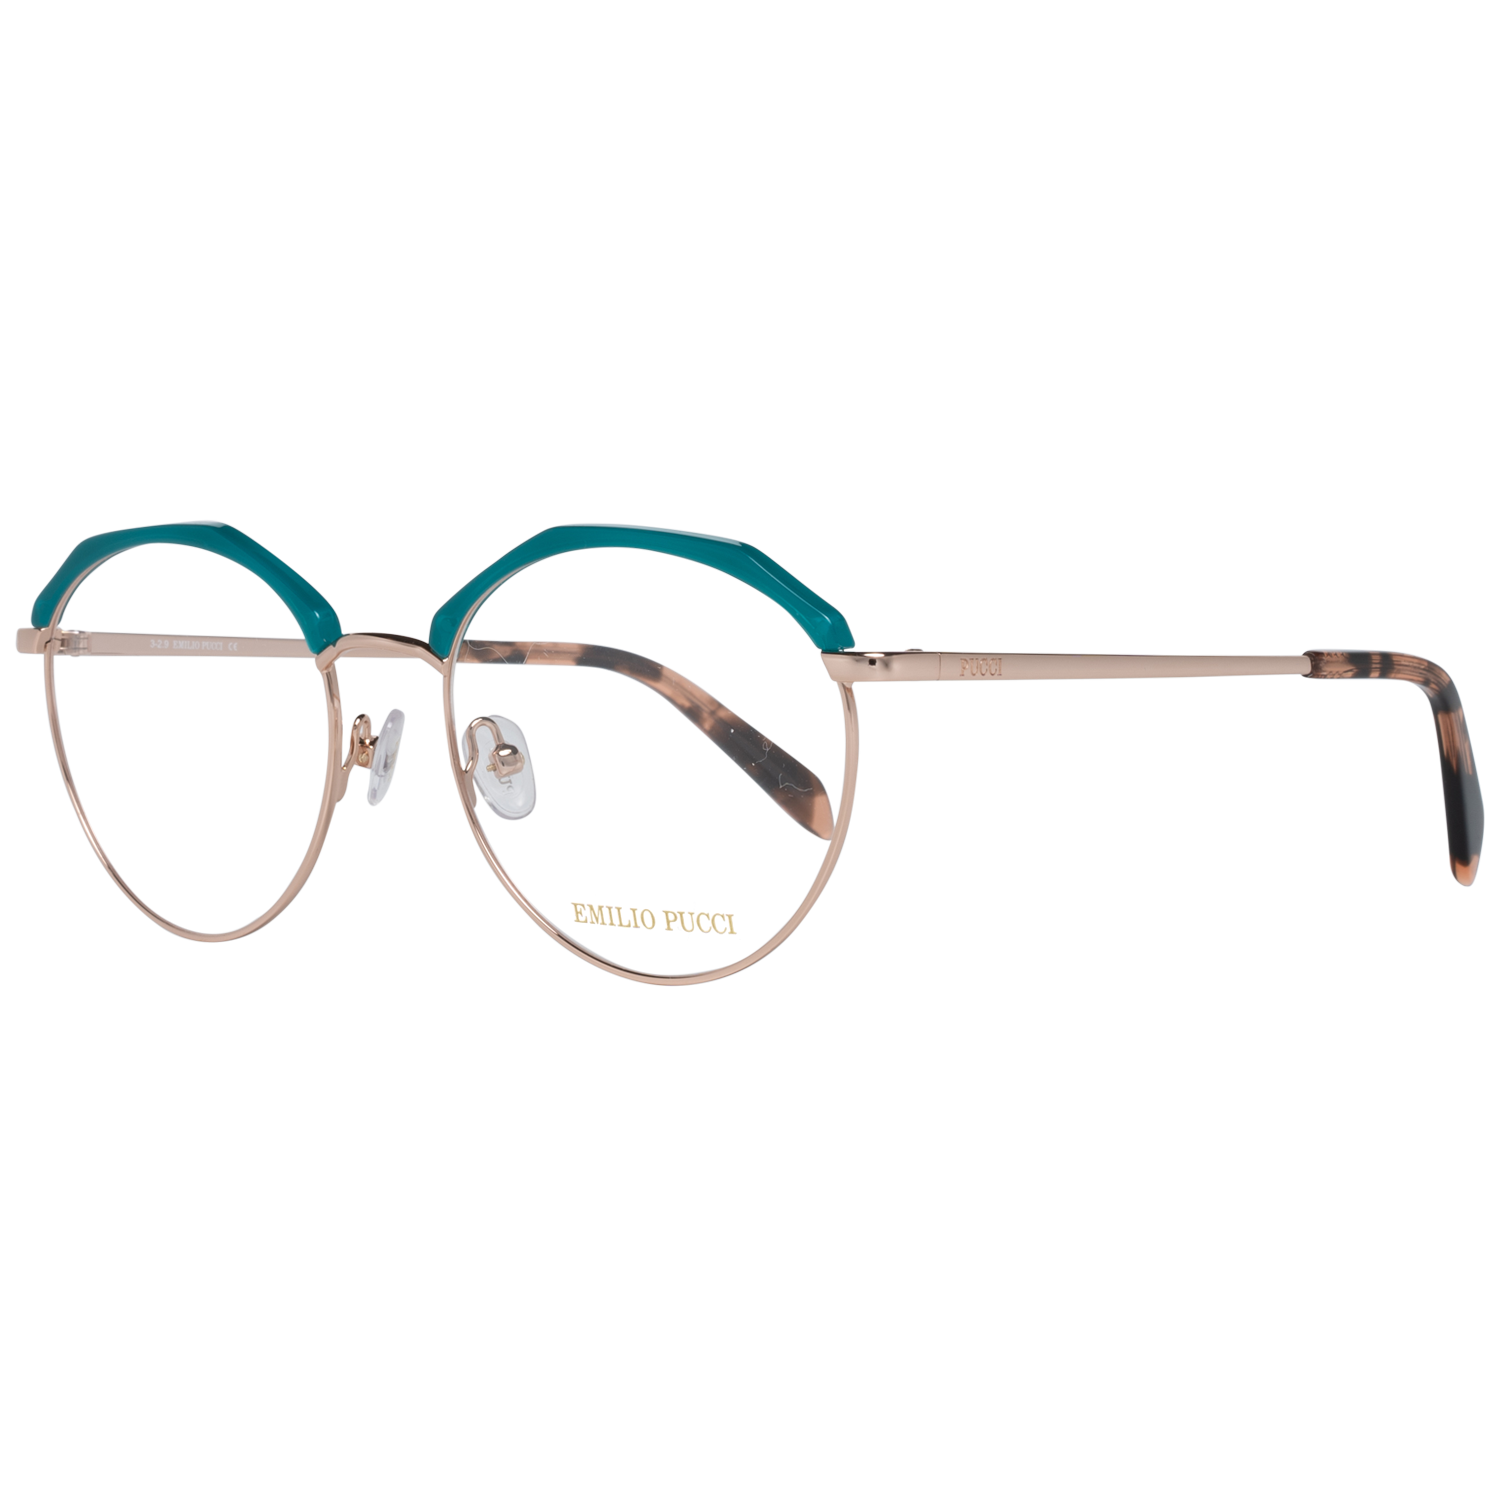 Emilio Pucci Frames Emilio Pucci Optical Frame EP5103 089 52 Eyeglasses Eyewear UK USA Australia 